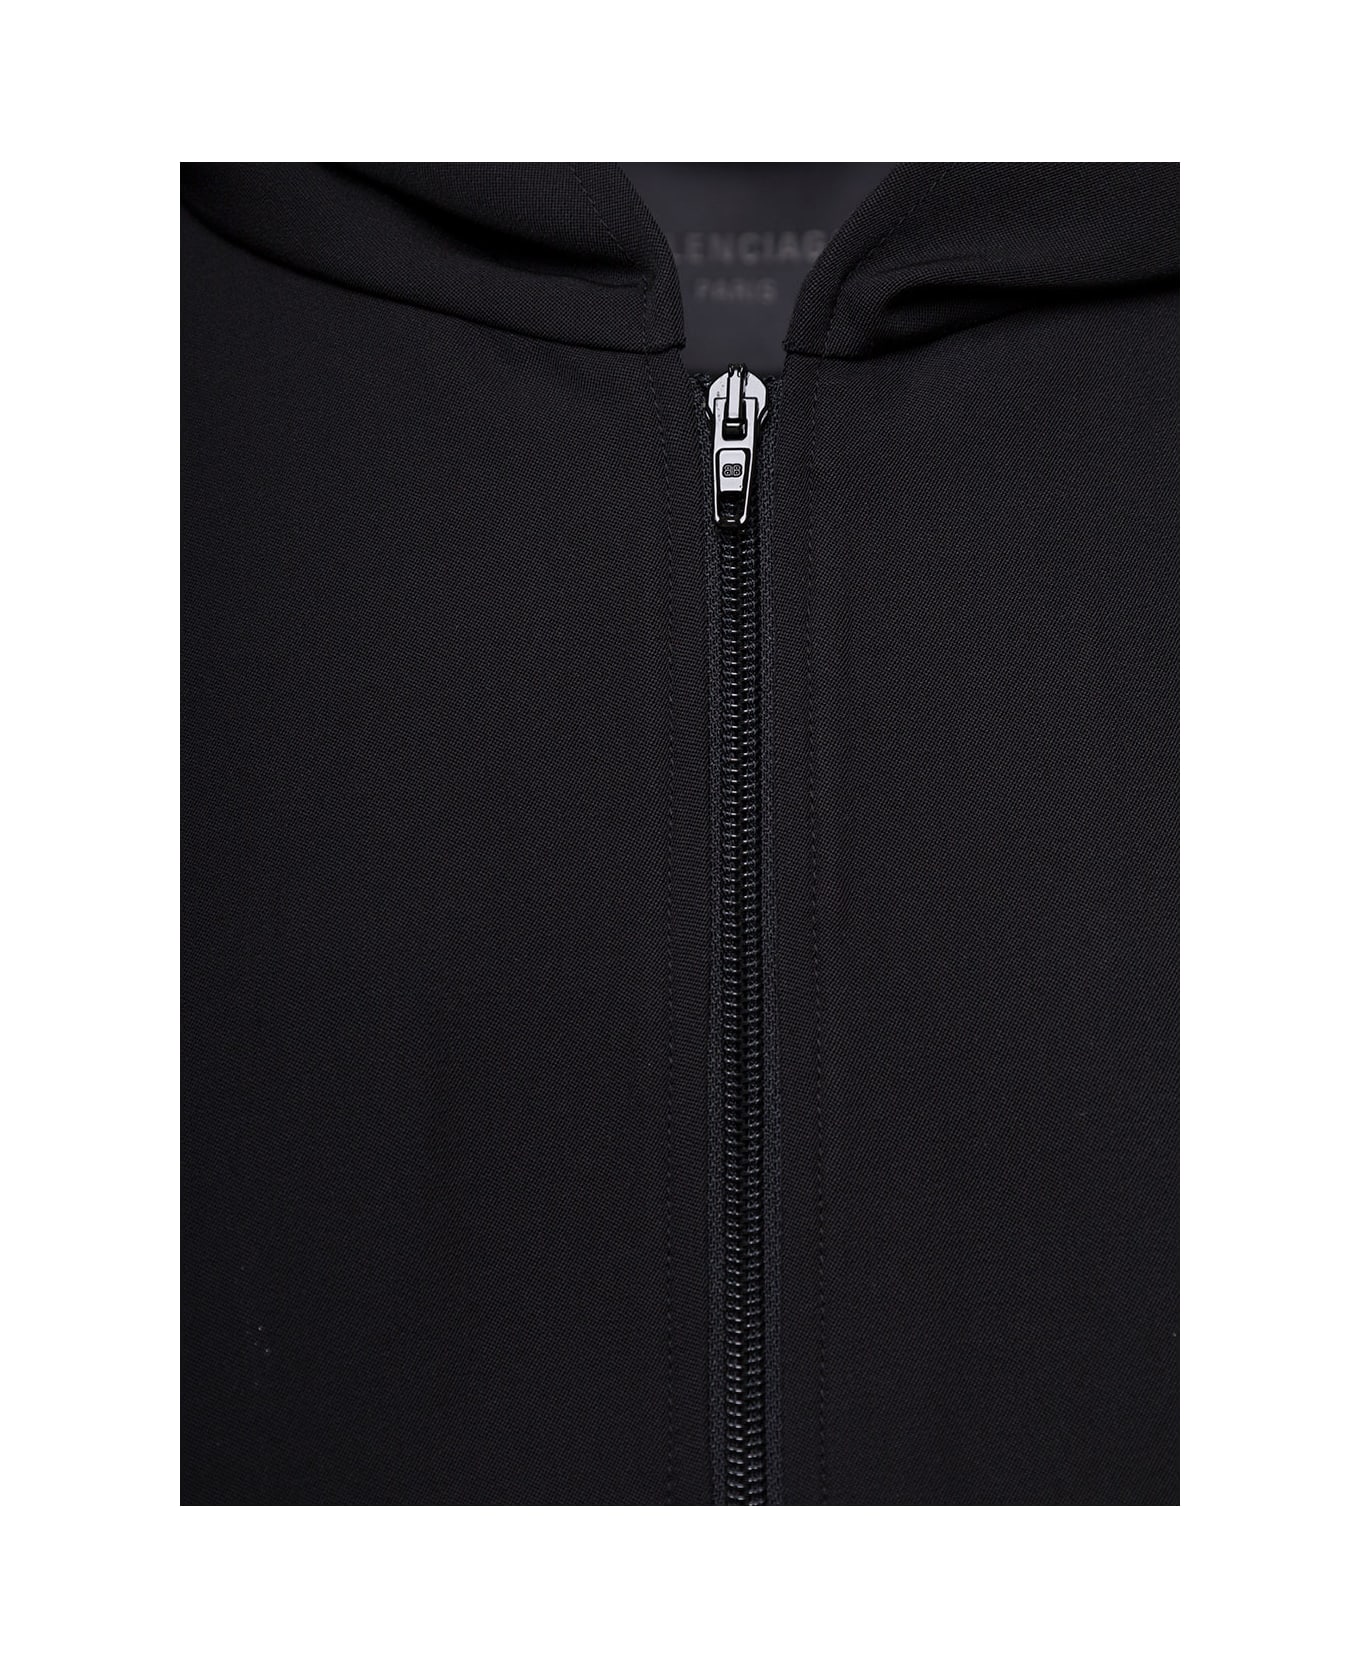 Balenciaga Black Zip-up Hoodie In Wool Man - Black